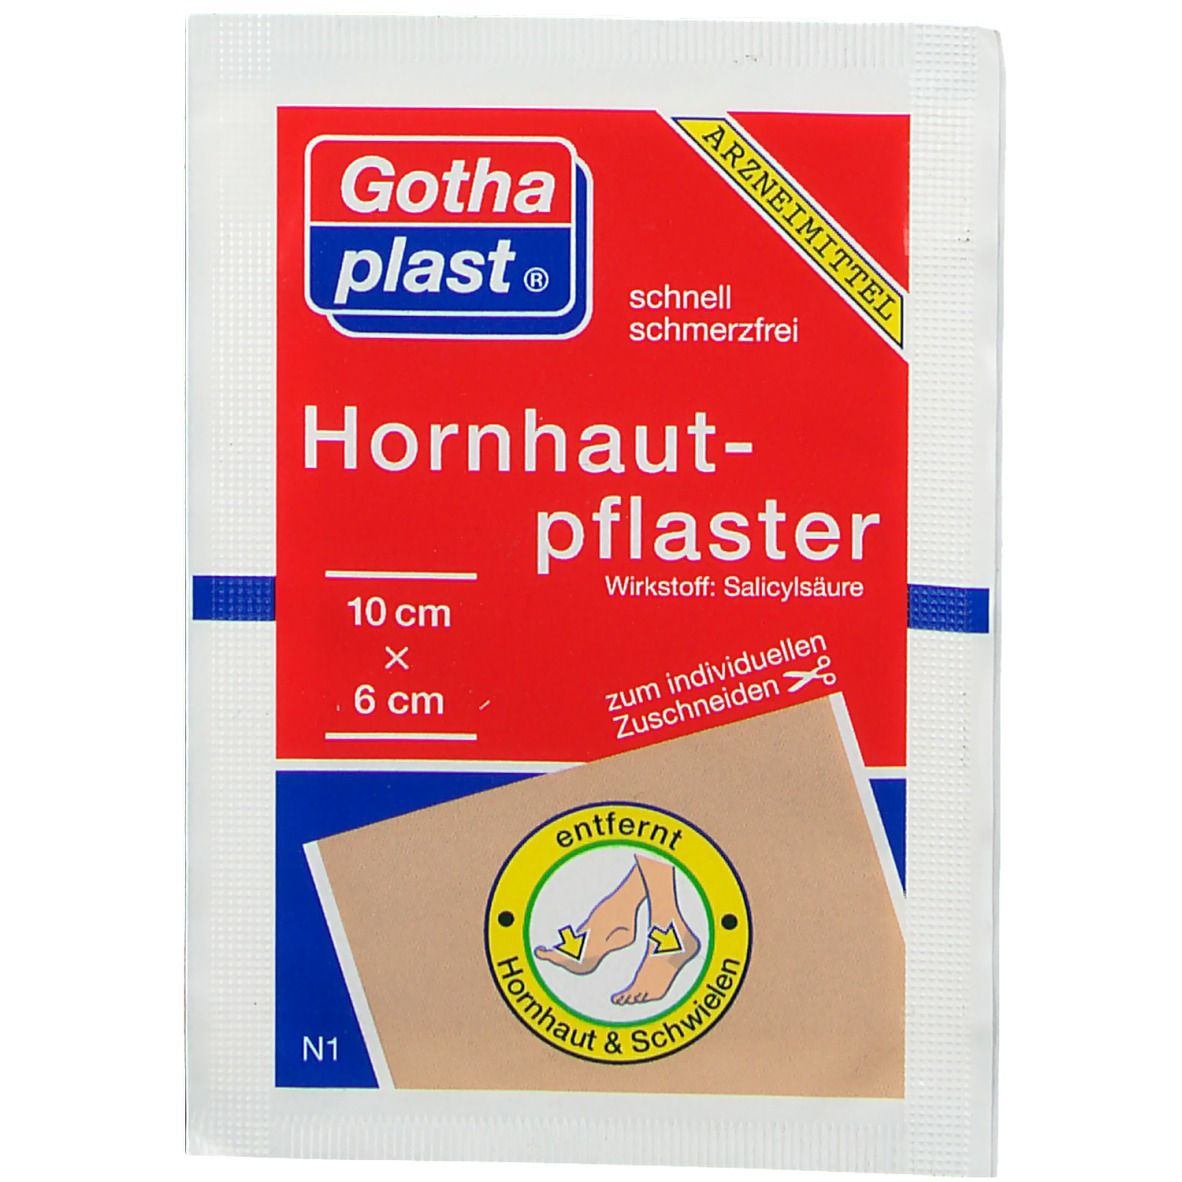 Gothaplast® Hornhautpflaster 10 cm x 6 cm